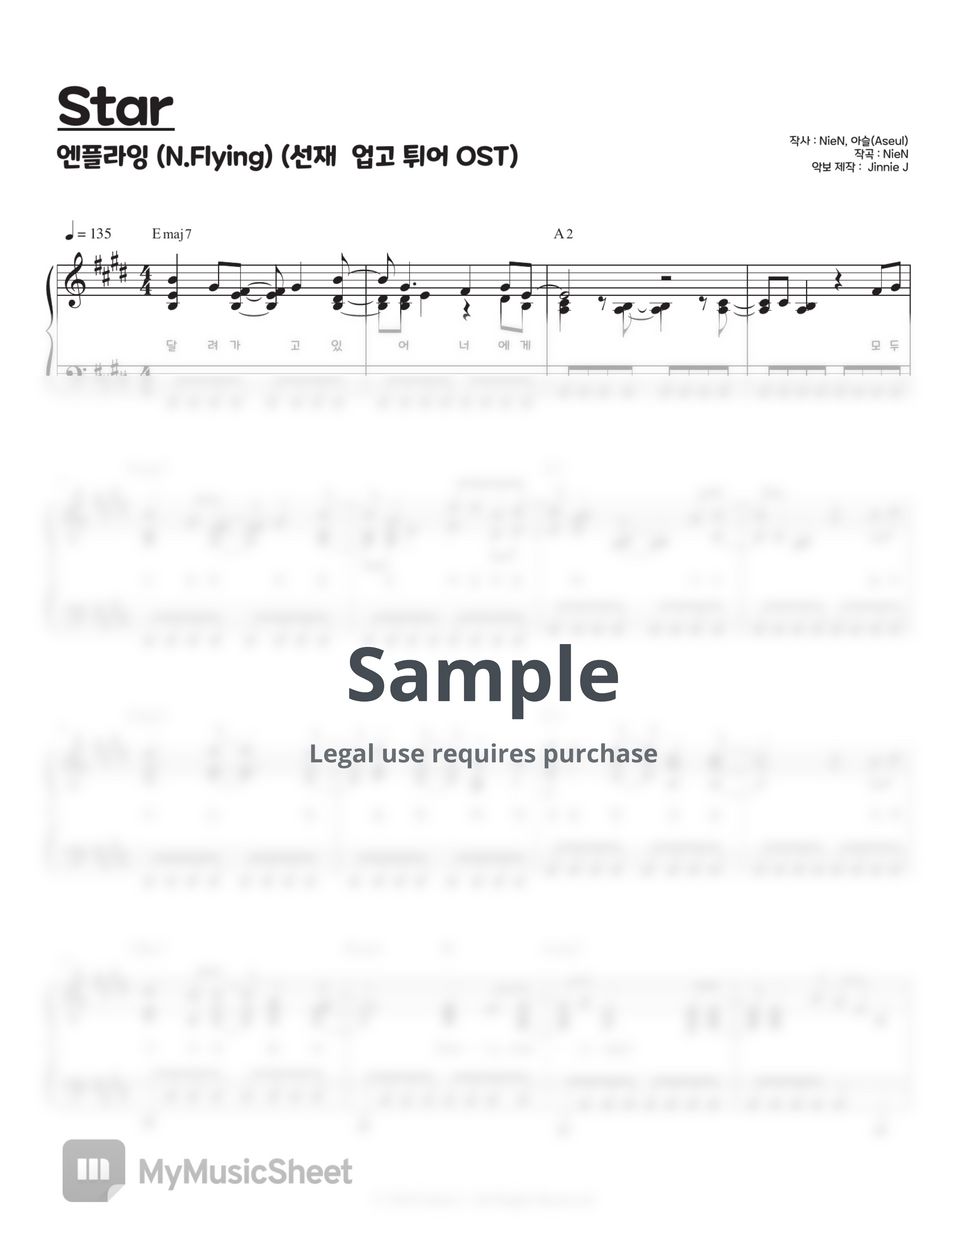 엔플라잉 (N.Flying) - Star (선재 업고 튀어 OST) (E key / F key) by Jinnie J